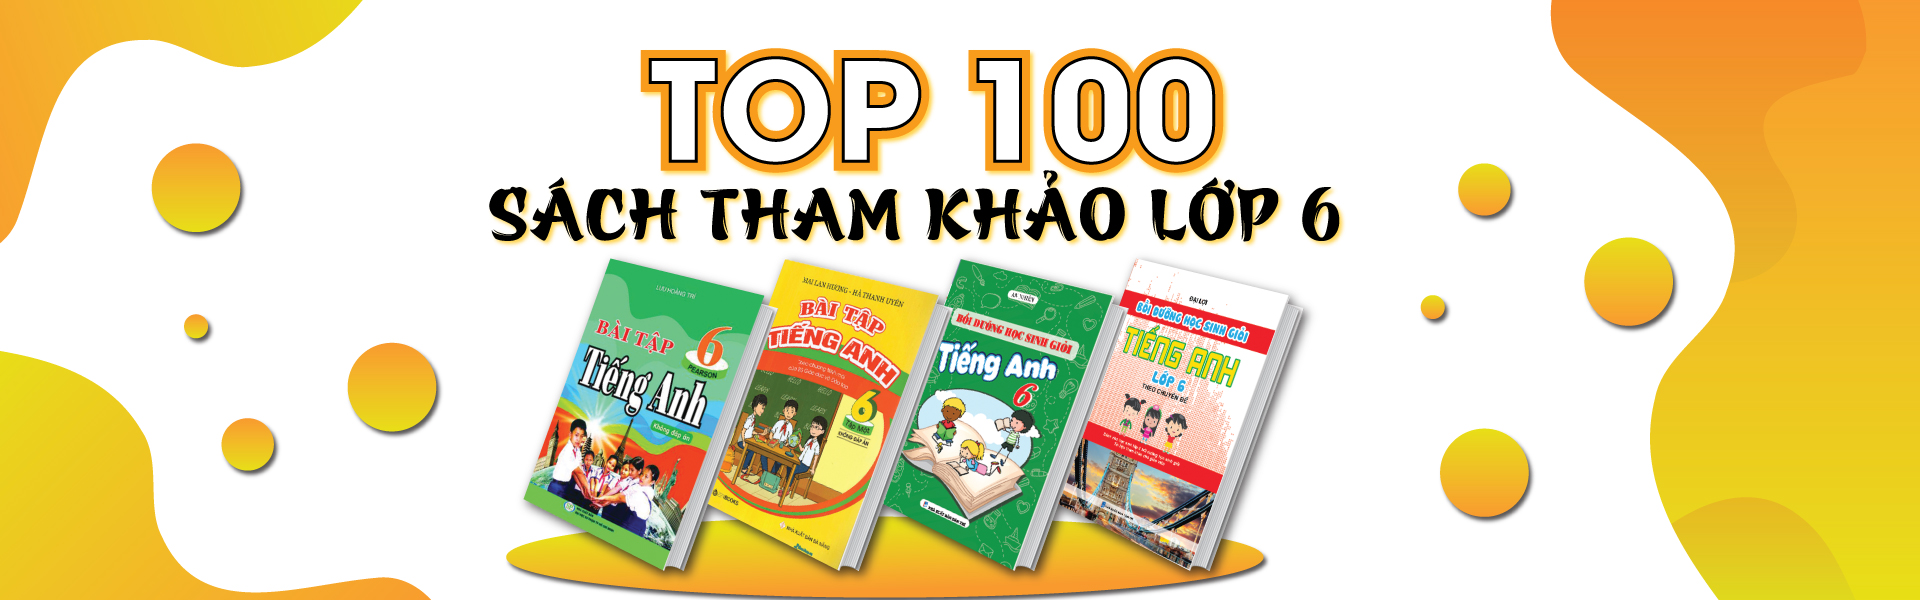 TOP 100 Sách Tham Khảo Lớp 6 Giúp Các Em Có Nền Móng Kiến Thức Vững Chắc Cho 4 Năm THCS